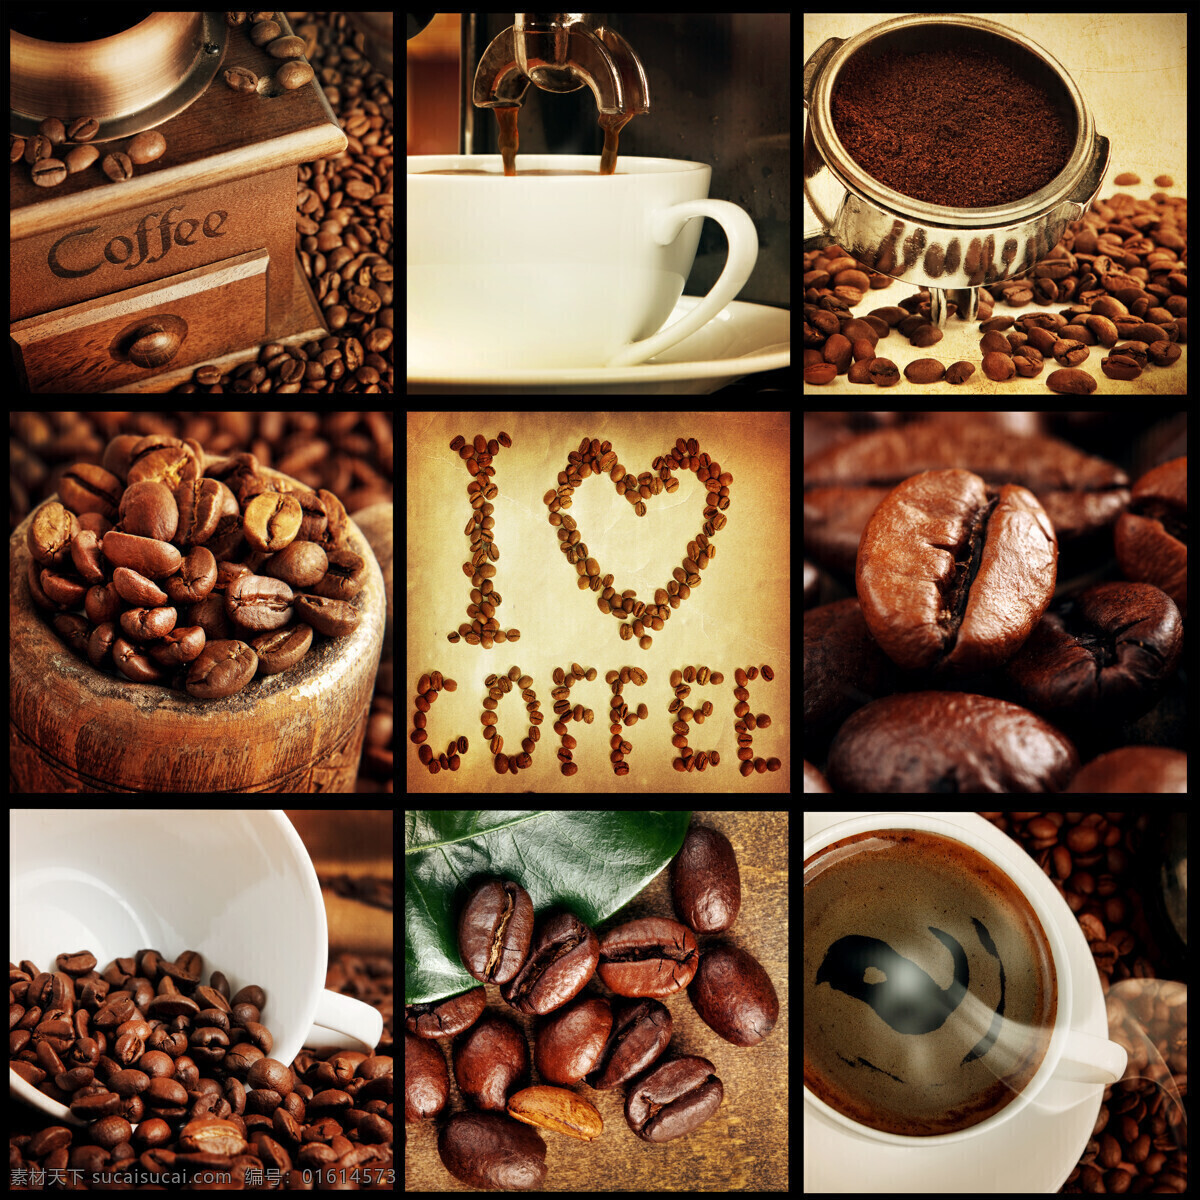 咖啡 图形 拼图 咖啡豆 咖啡原料 咖啡杯子 酒水忺料 咖啡图片 餐饮美食